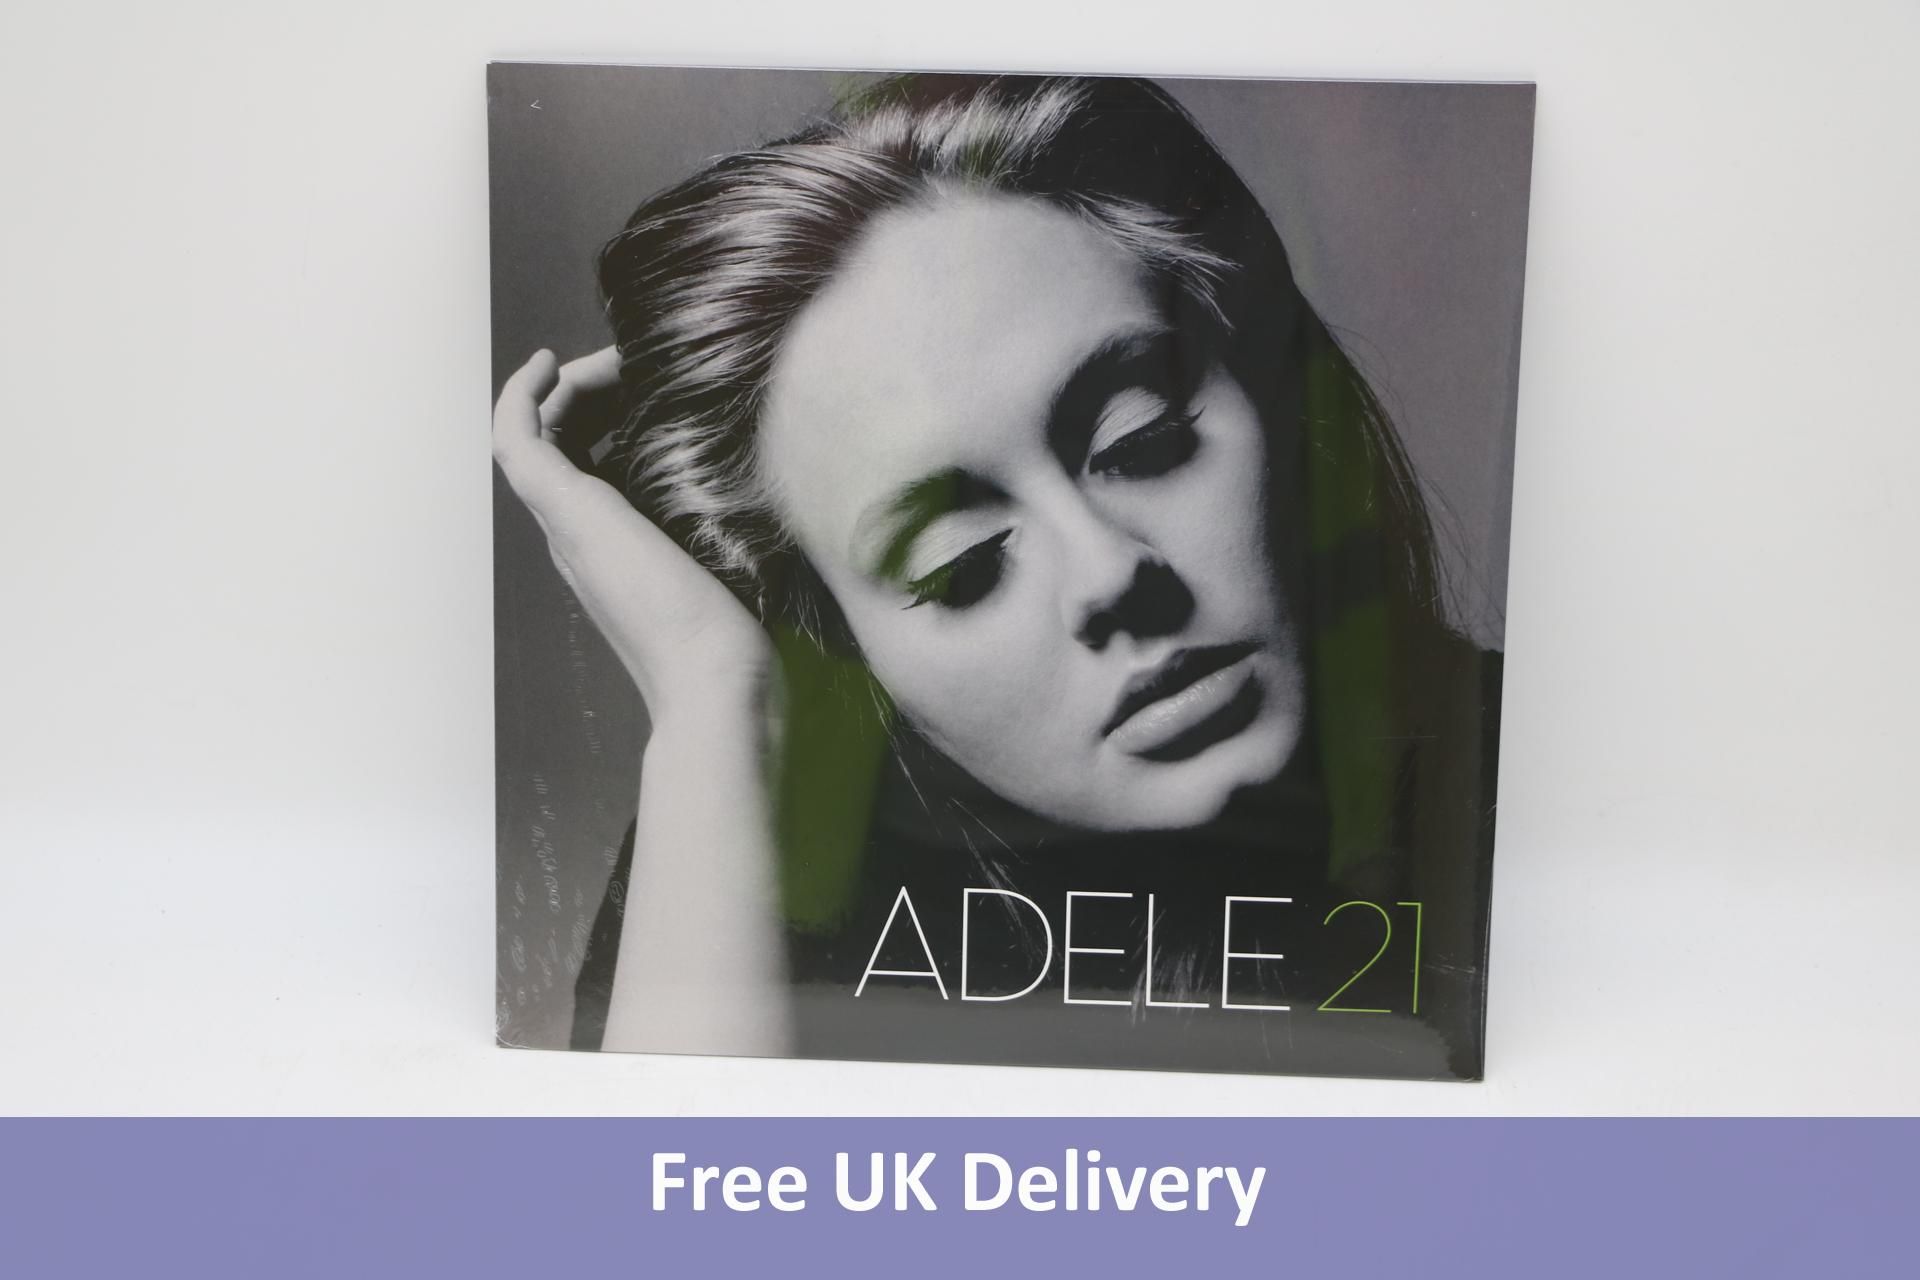 Three Adele-21 Vinyl Albums